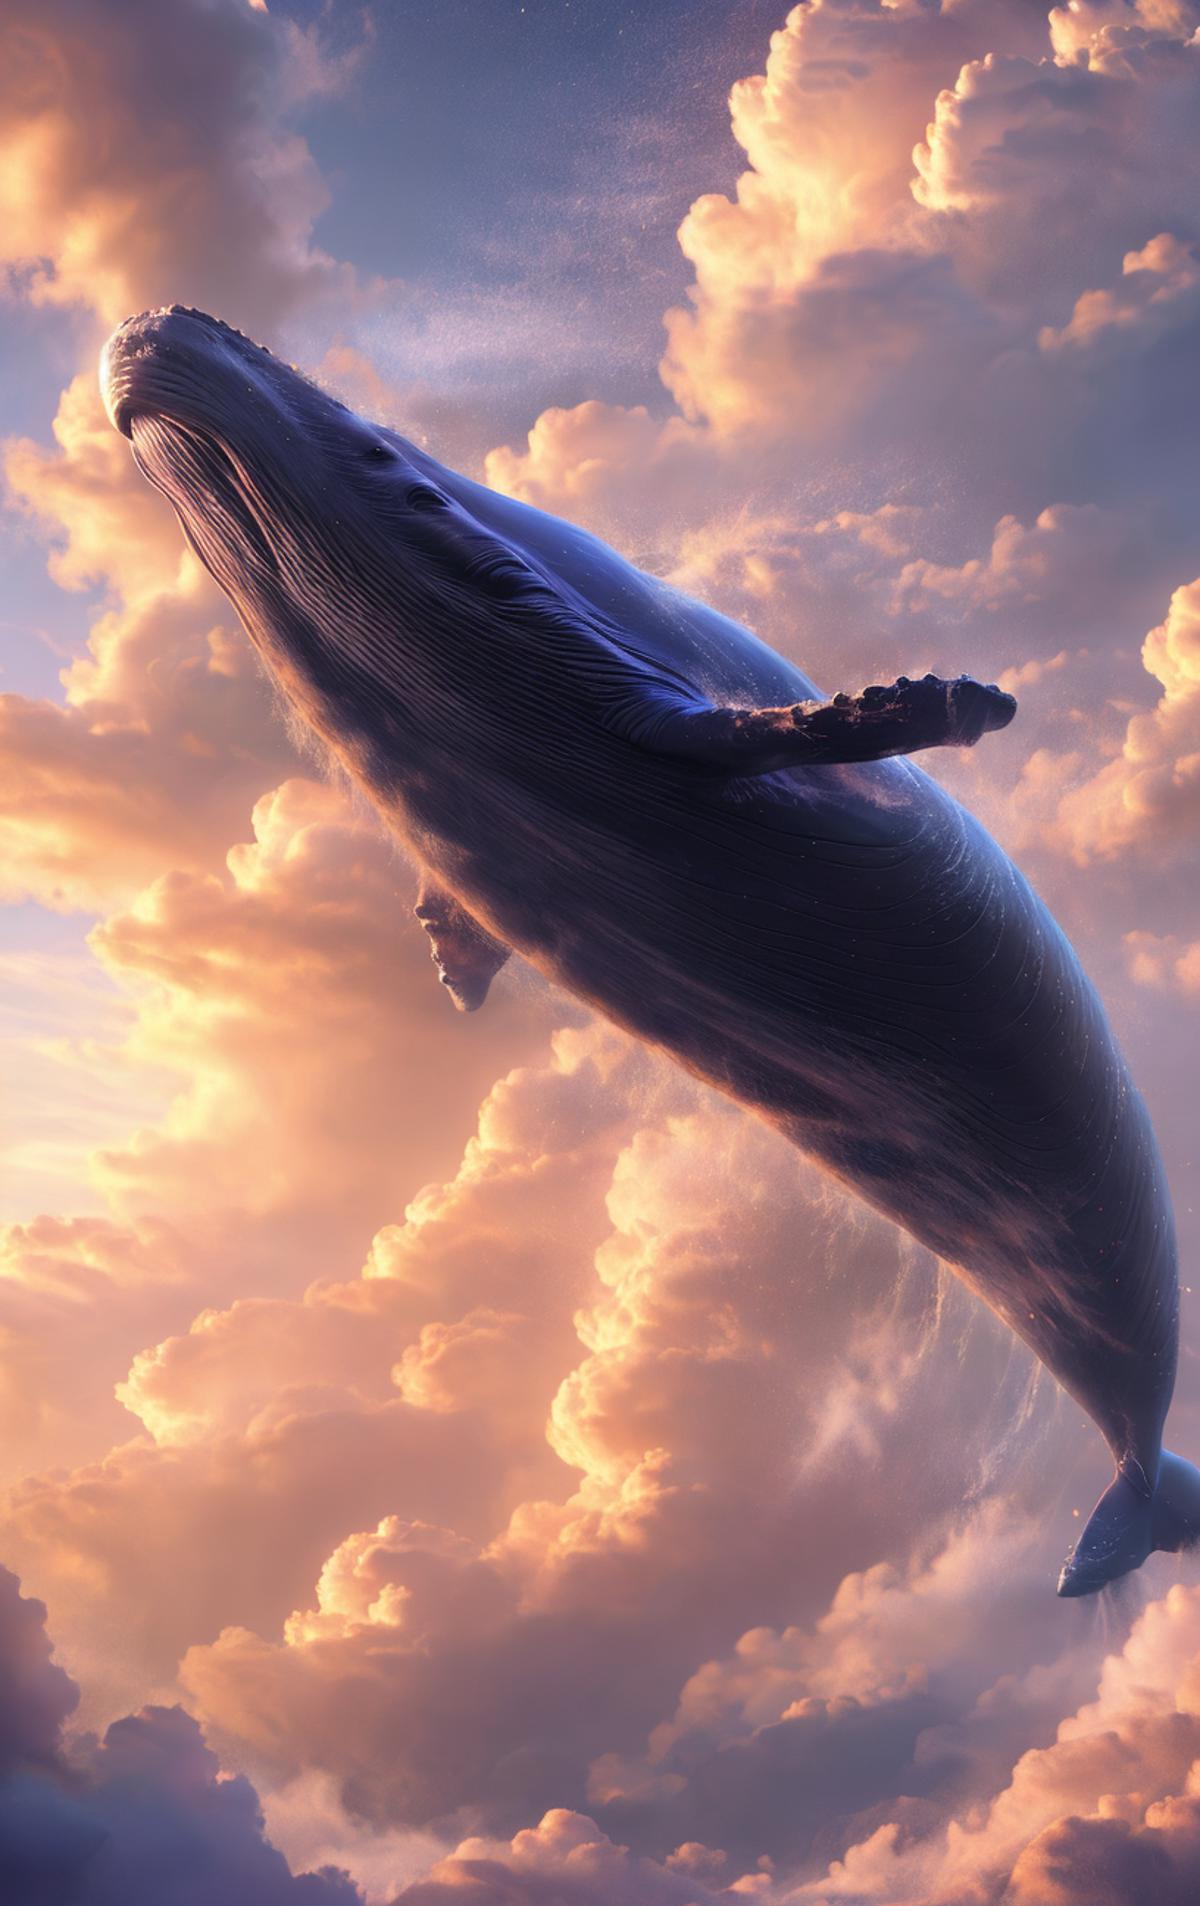 绪儿-飞鲸鱼 xuer Big whale image by nuaion